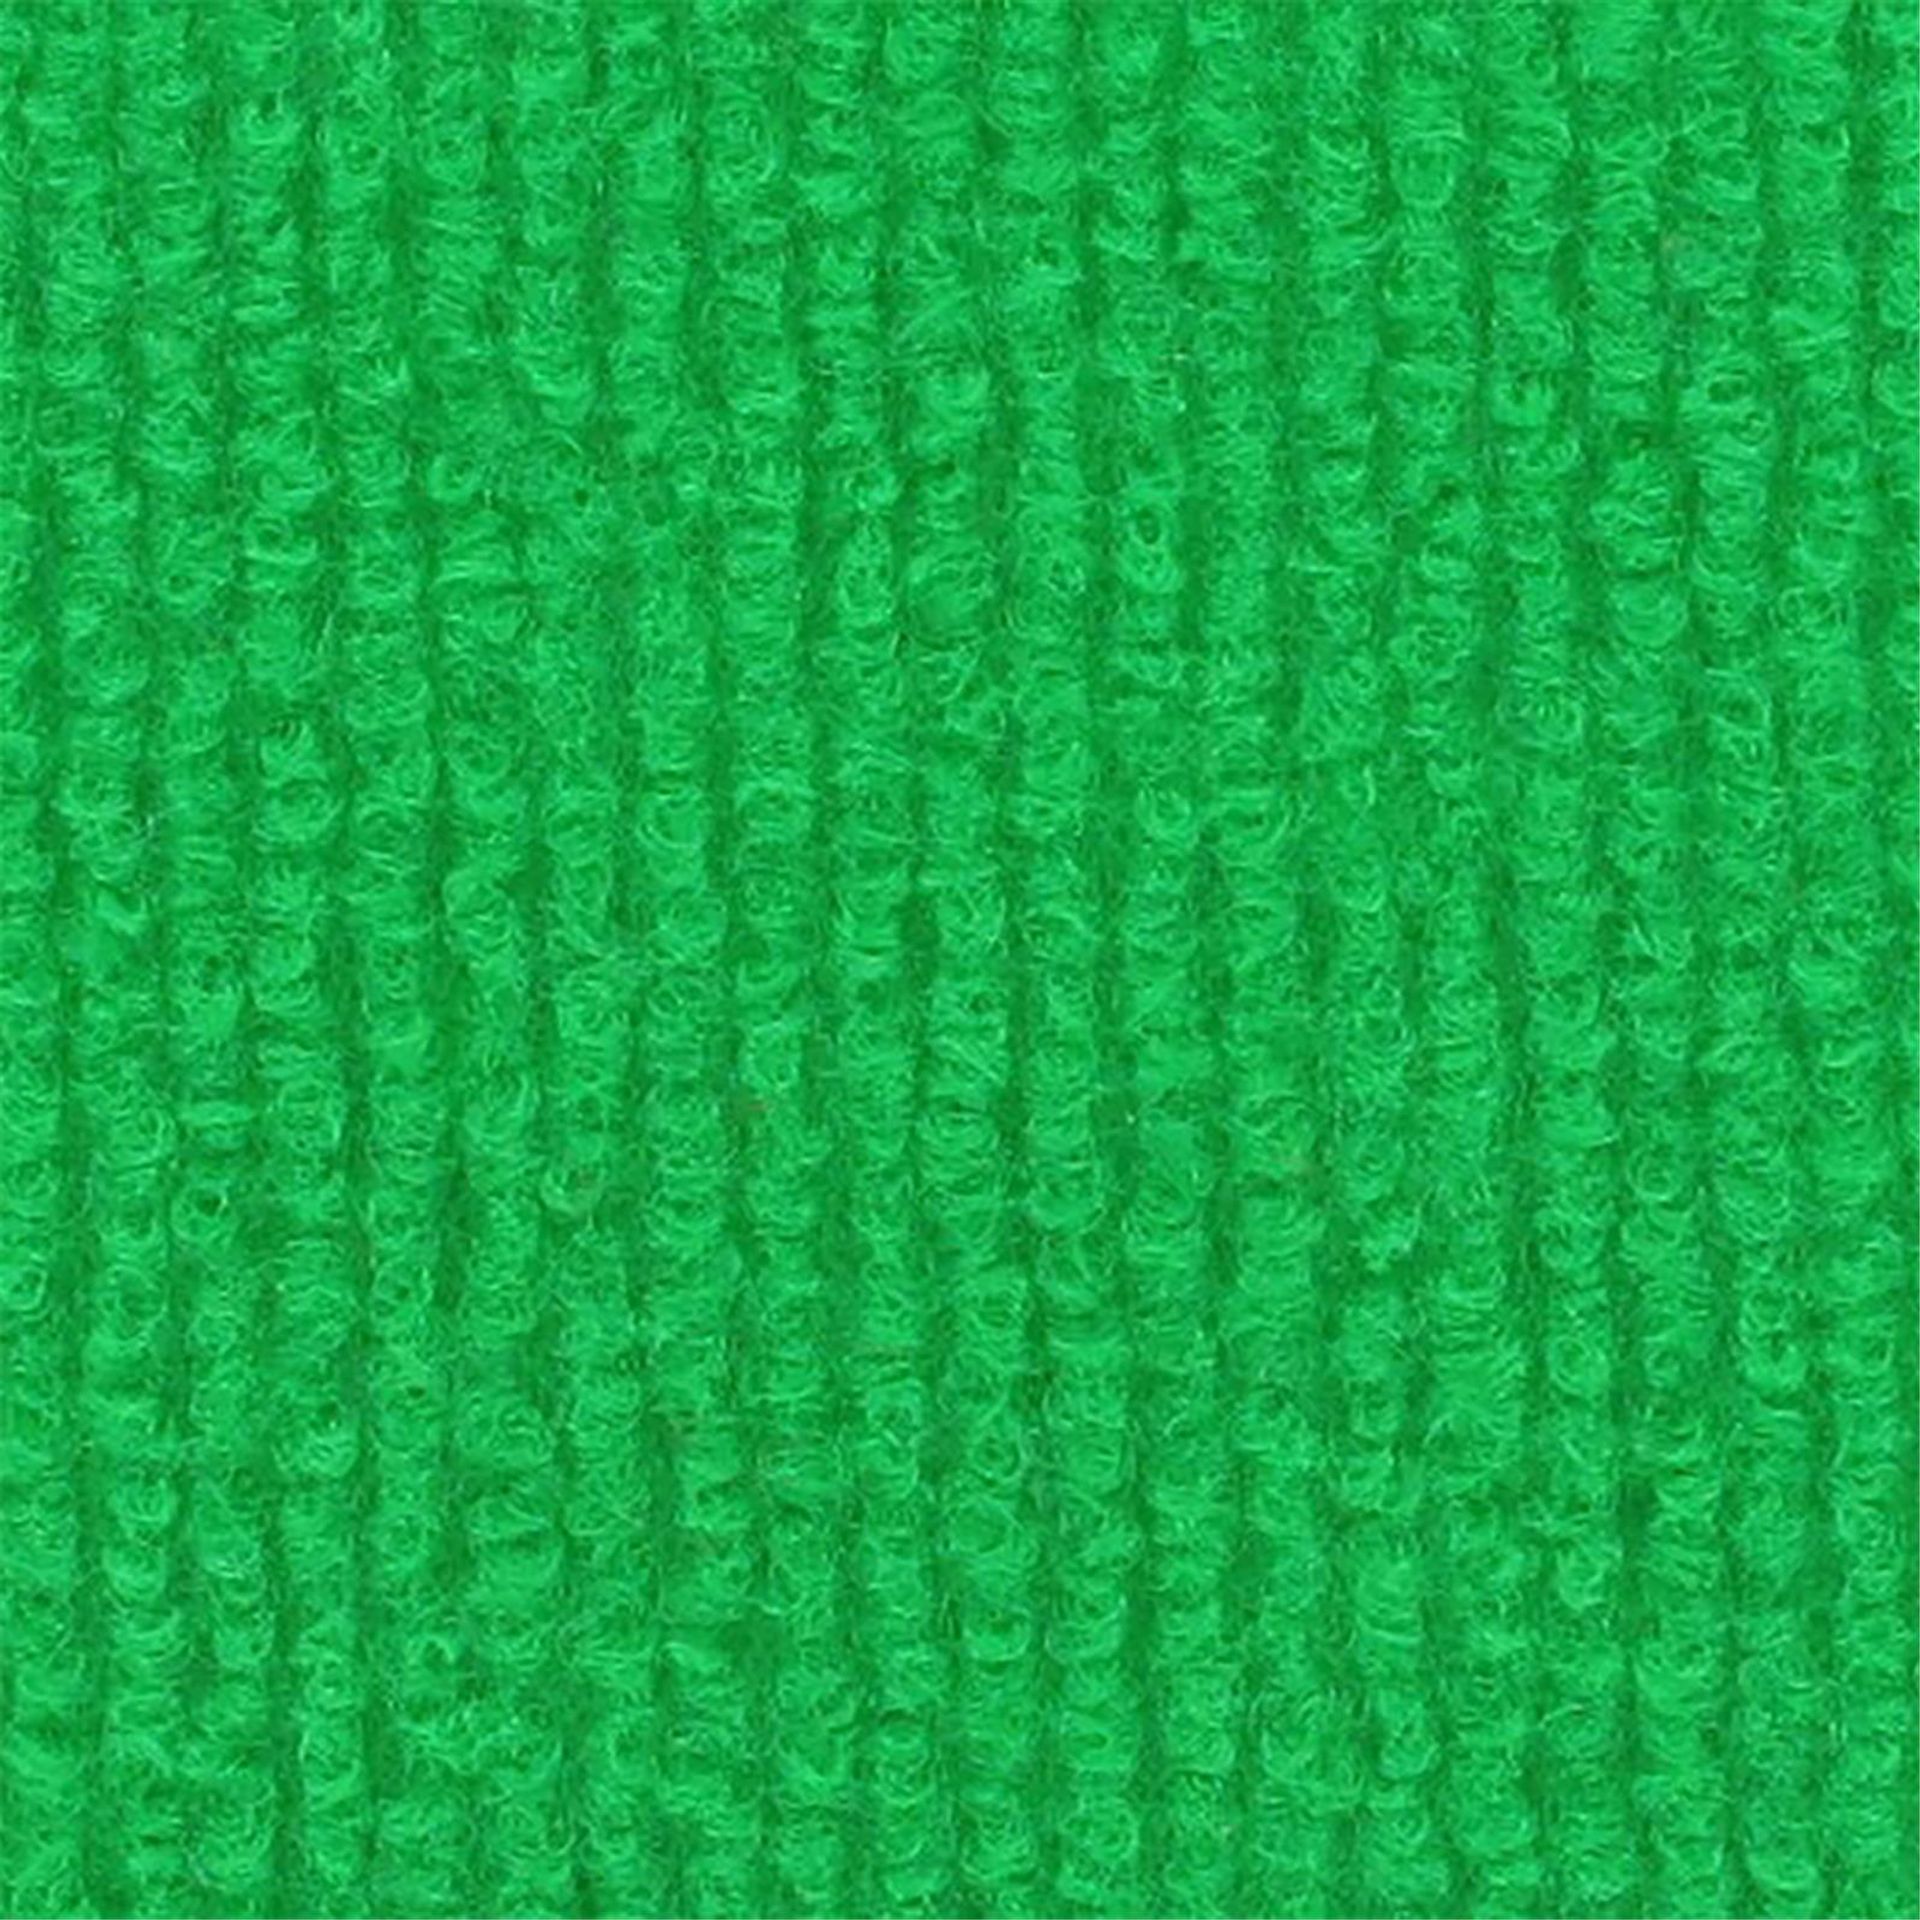 Messeboden Rips-Nadelvlies EXPOLINE Apple Green 0961 100qm ohne Schutzfolie - Rollenbreite 200 cm